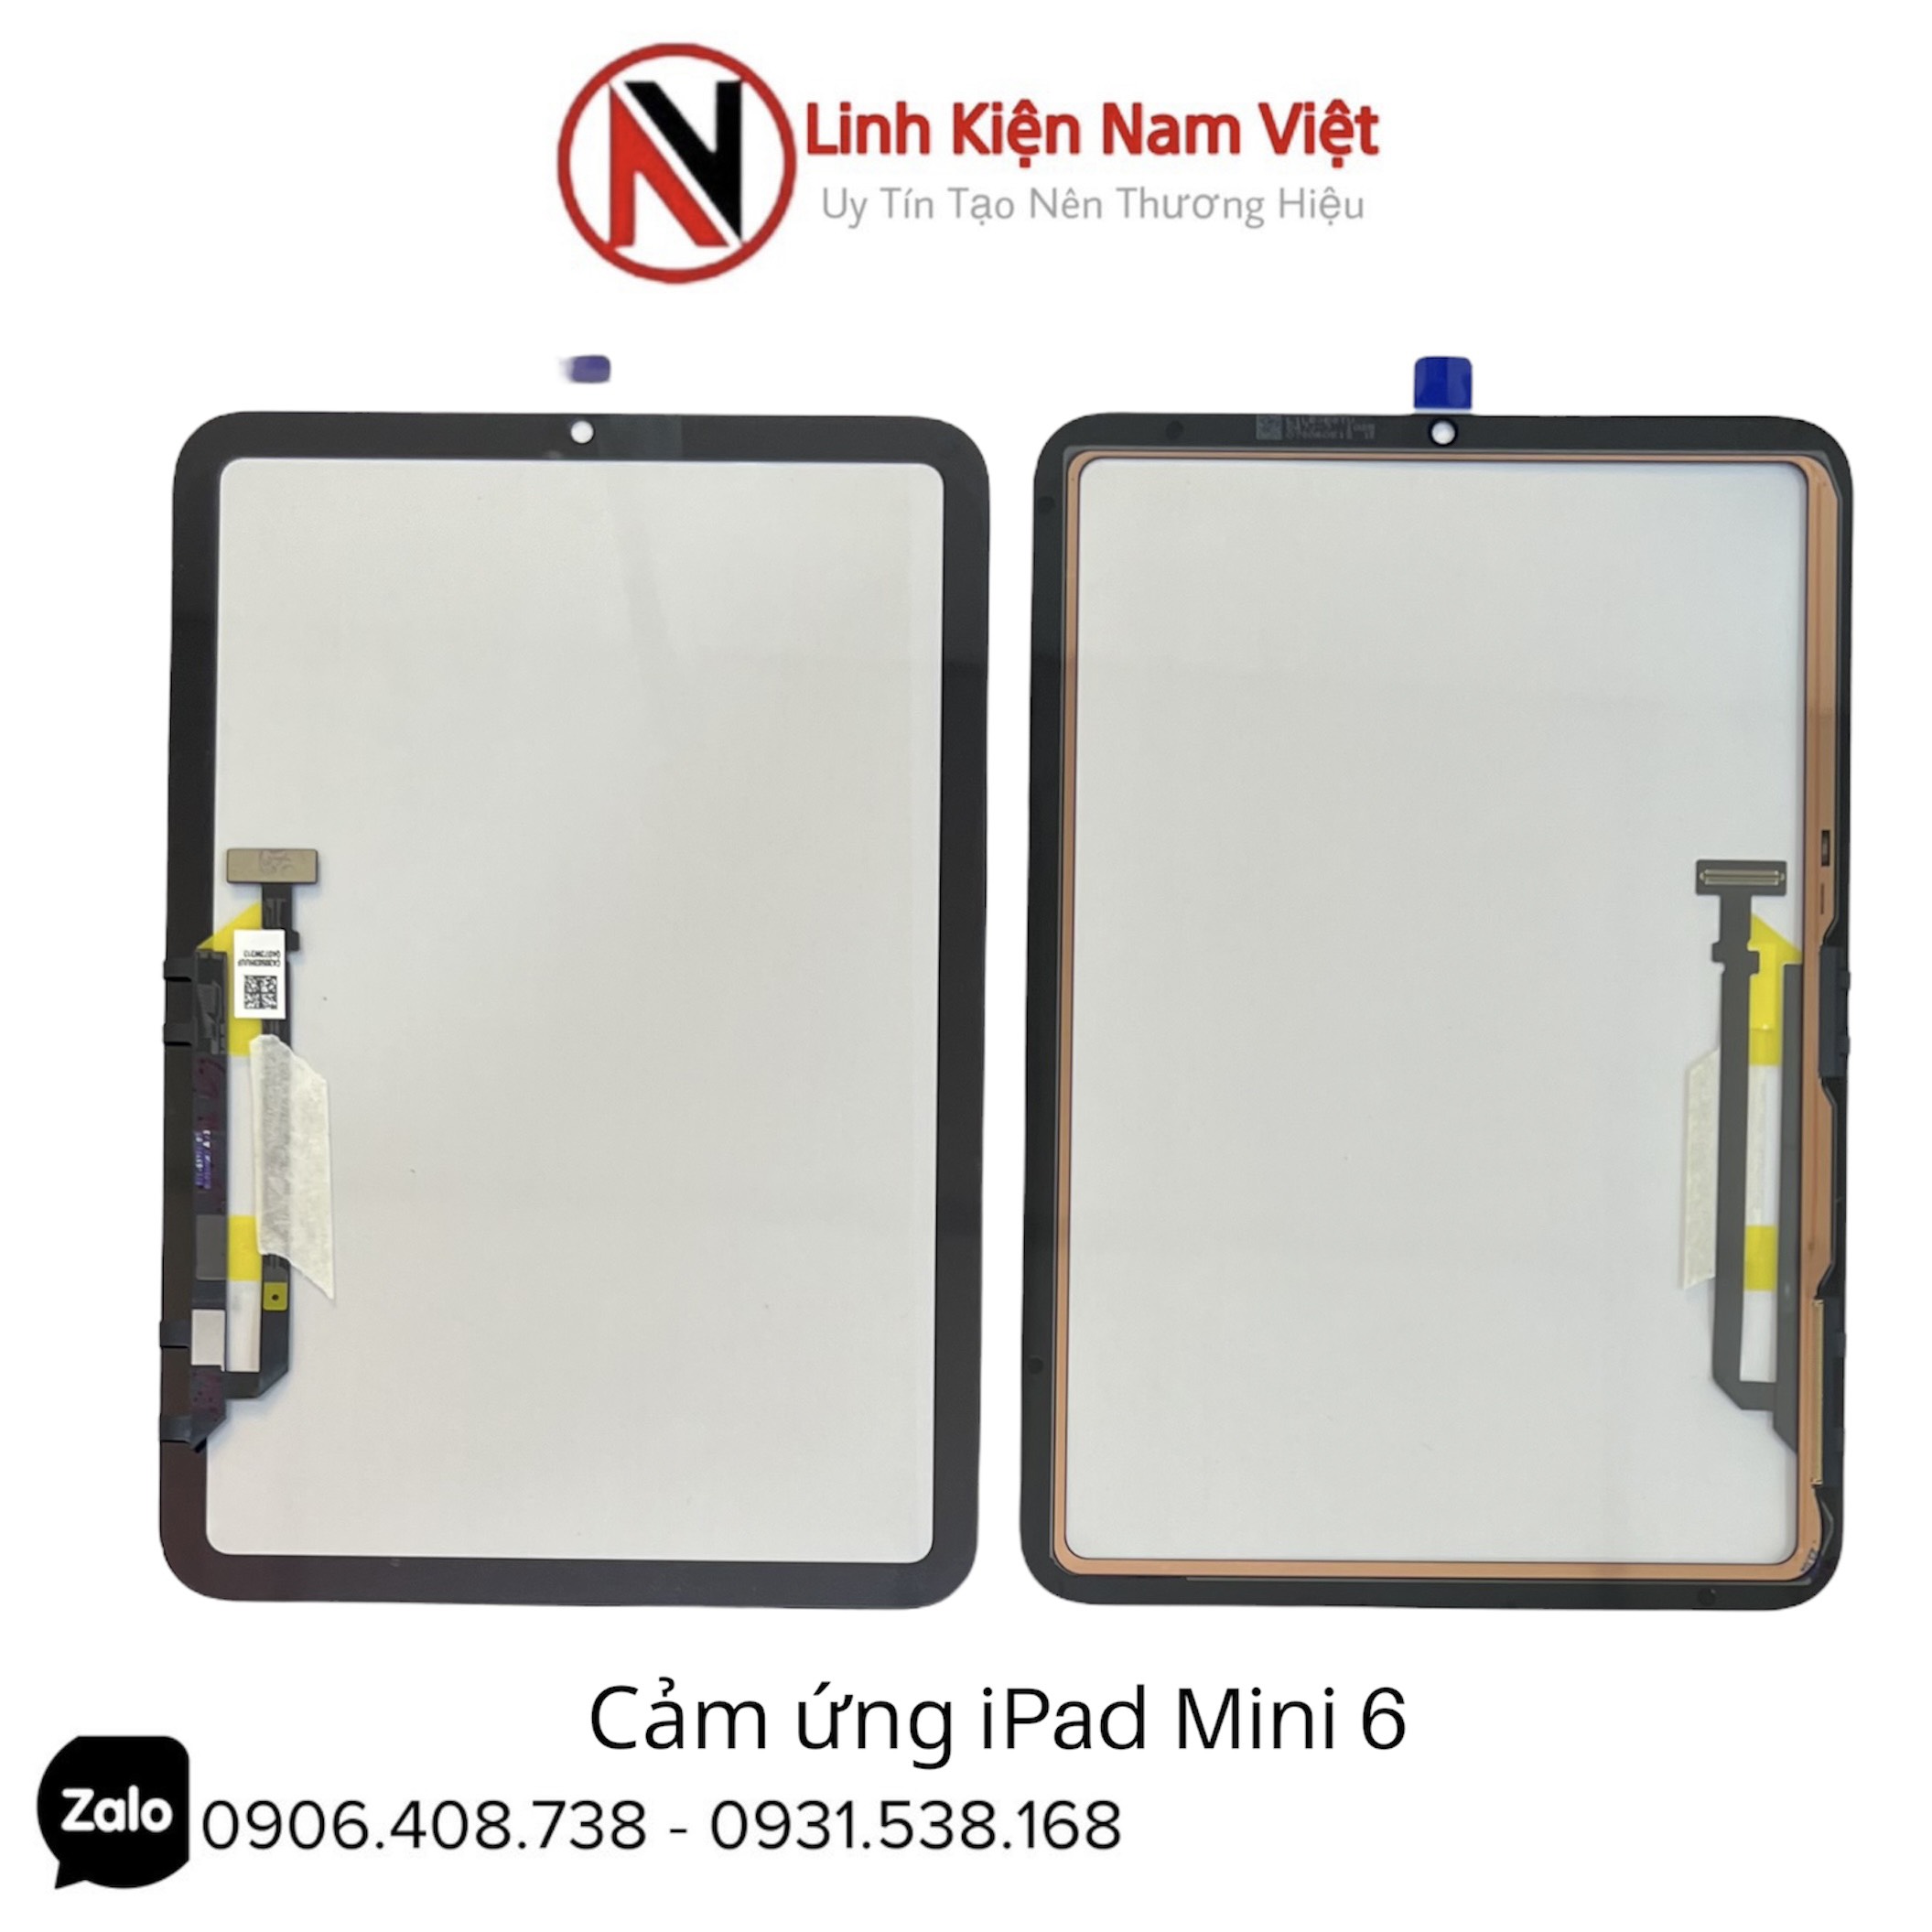 Cảm Ứng Ipad Mini 6